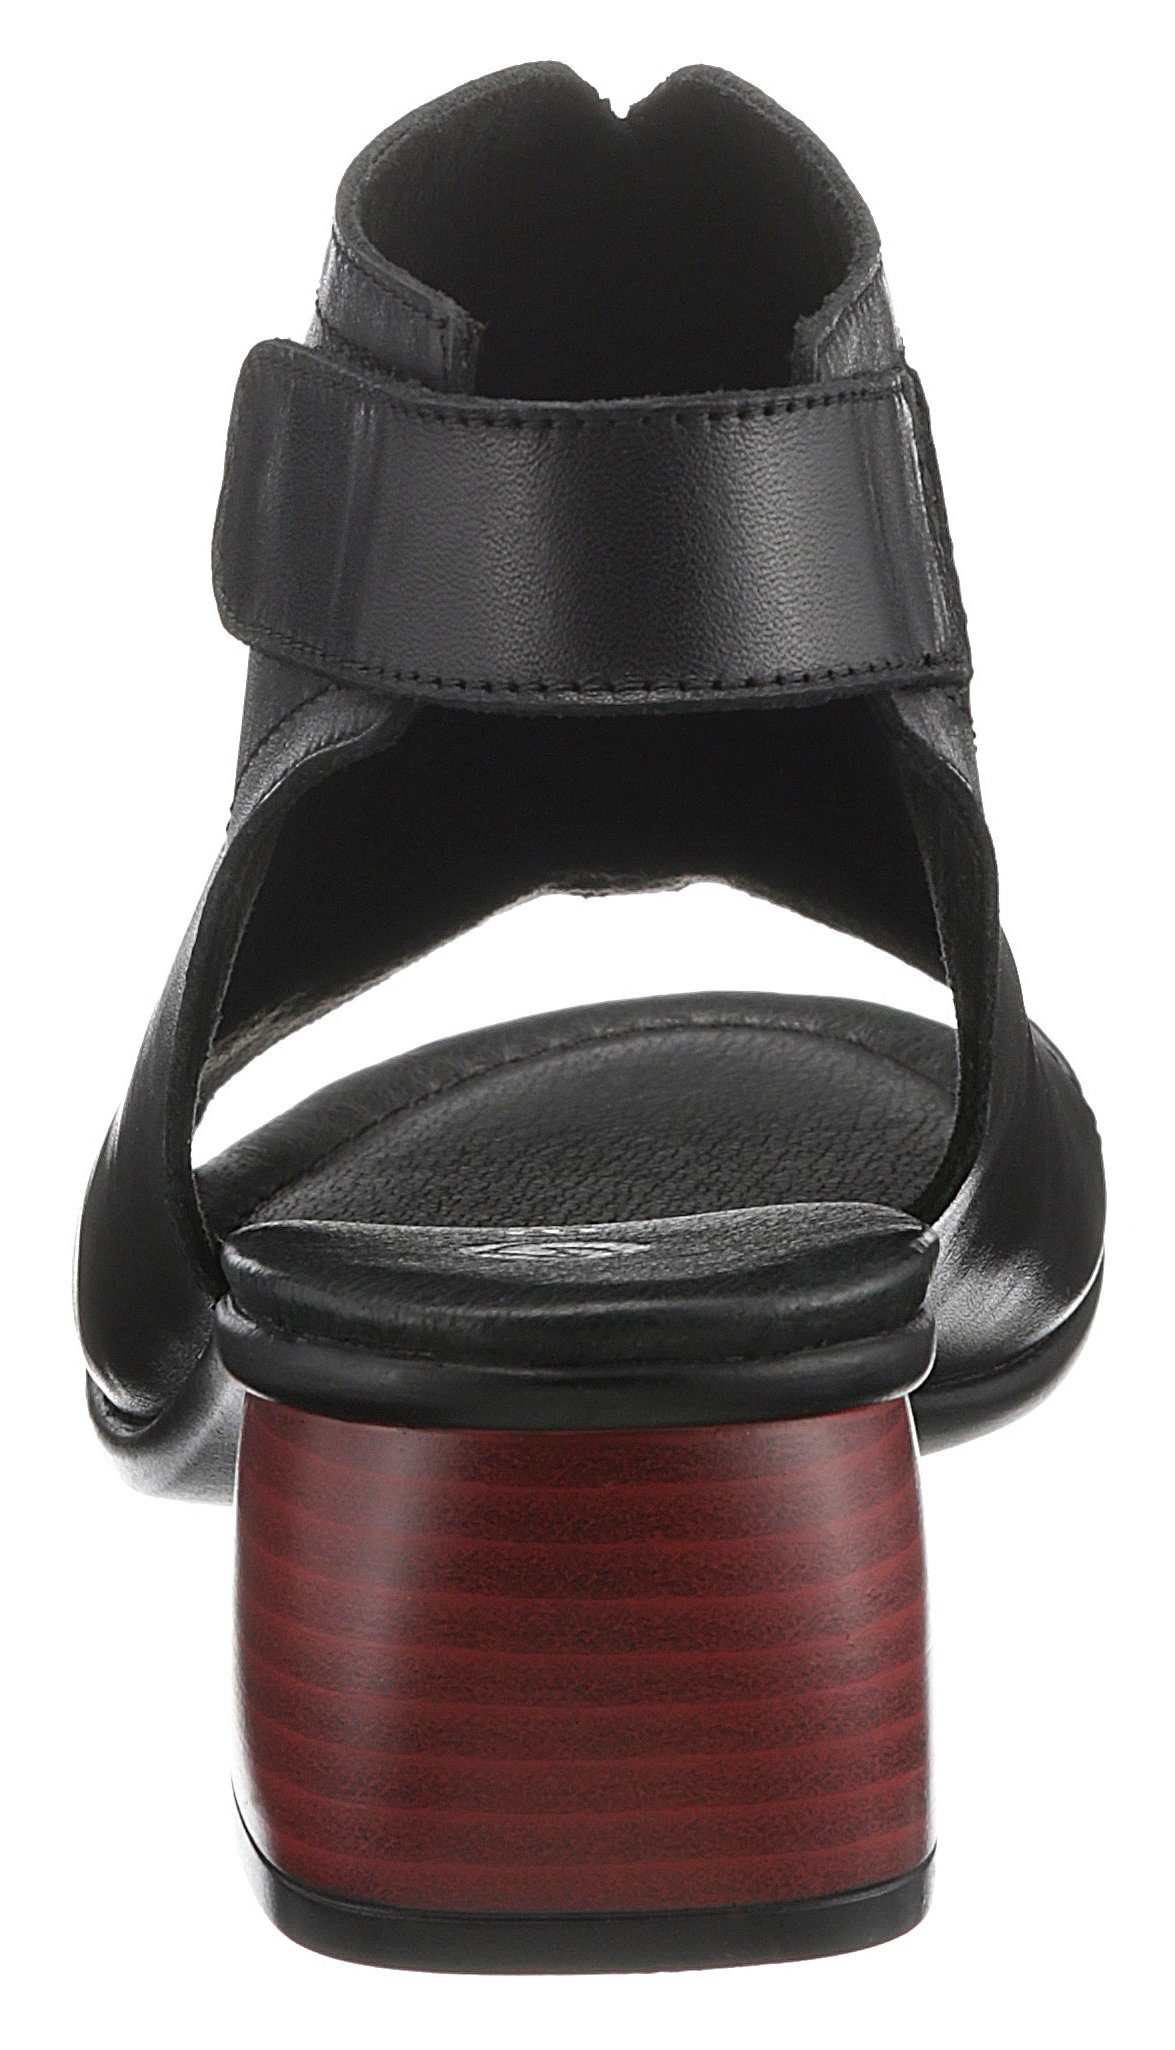 Klettverschluss mit praktischem Sandalette Remonte